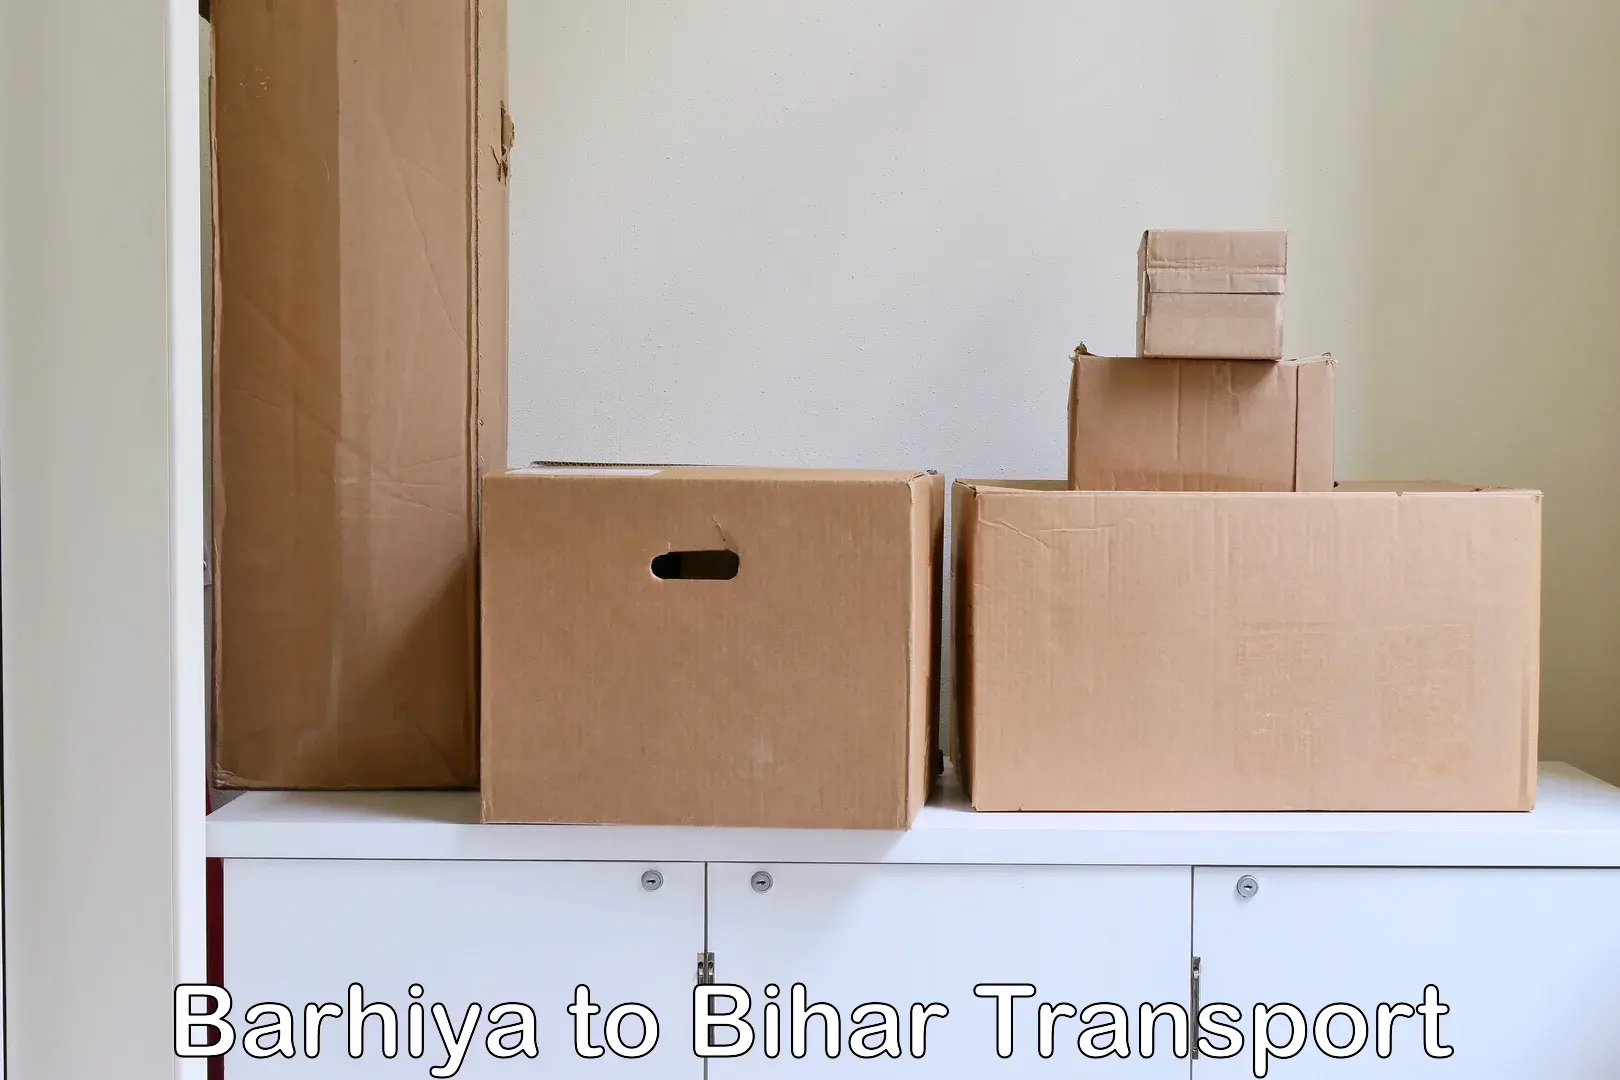 Online transport booking Barhiya to Bhorey